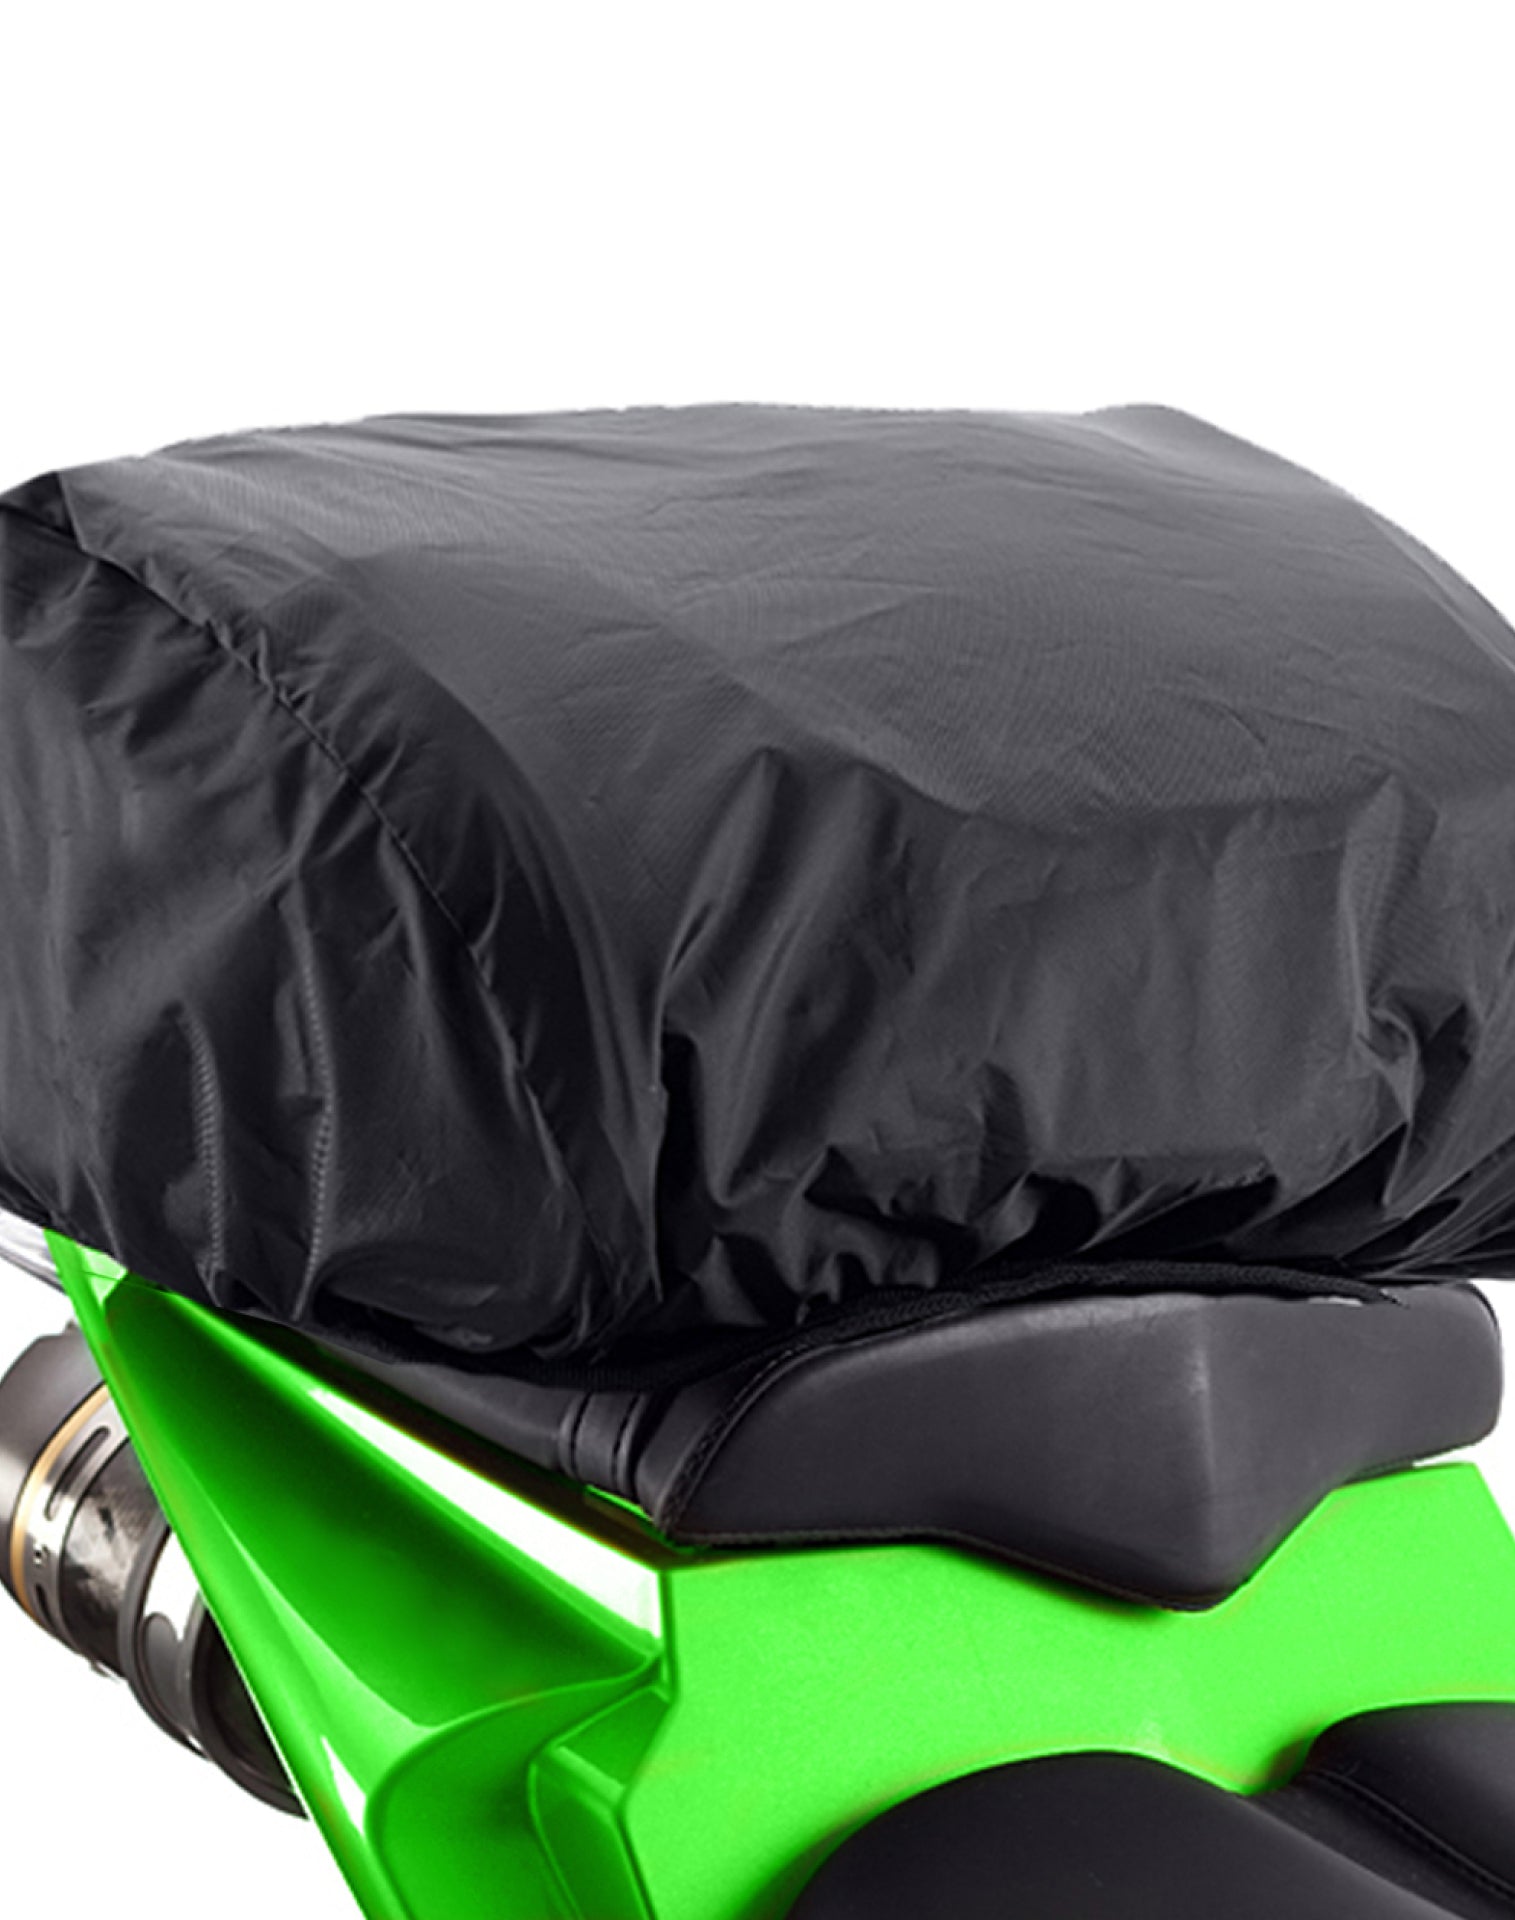 Viking AXE Small Yamaha Motorcycle Tail Bag Durable